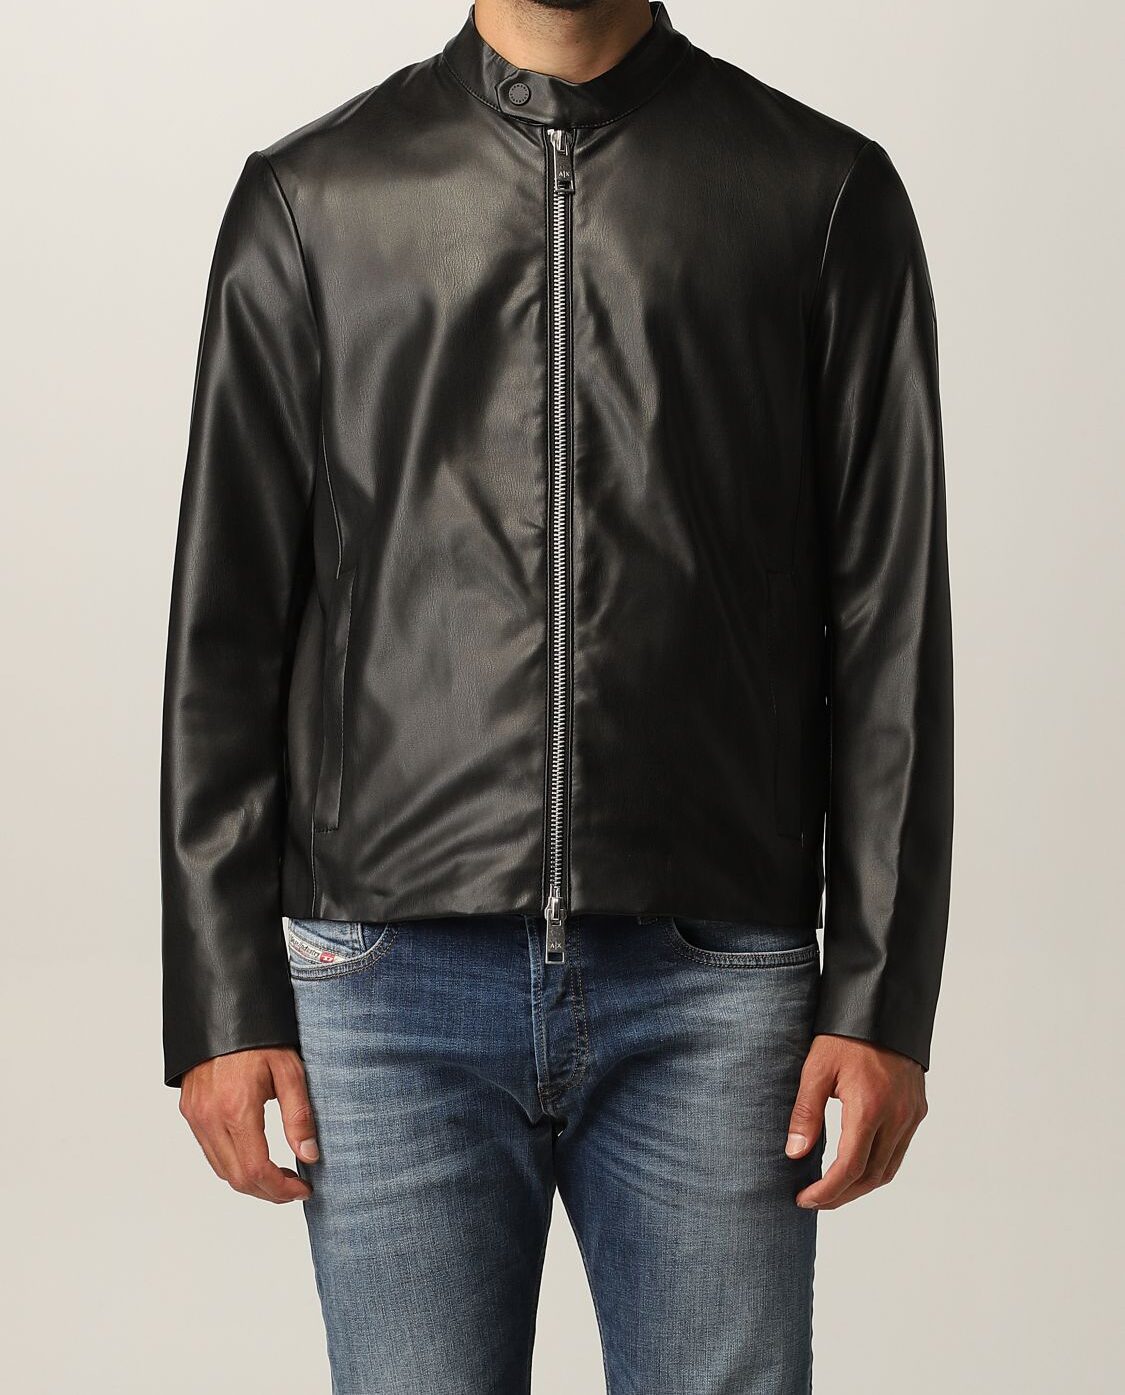 ARMANI EXCHANGE: Biker Jacket in synthetic leather | Jacket Armani ...